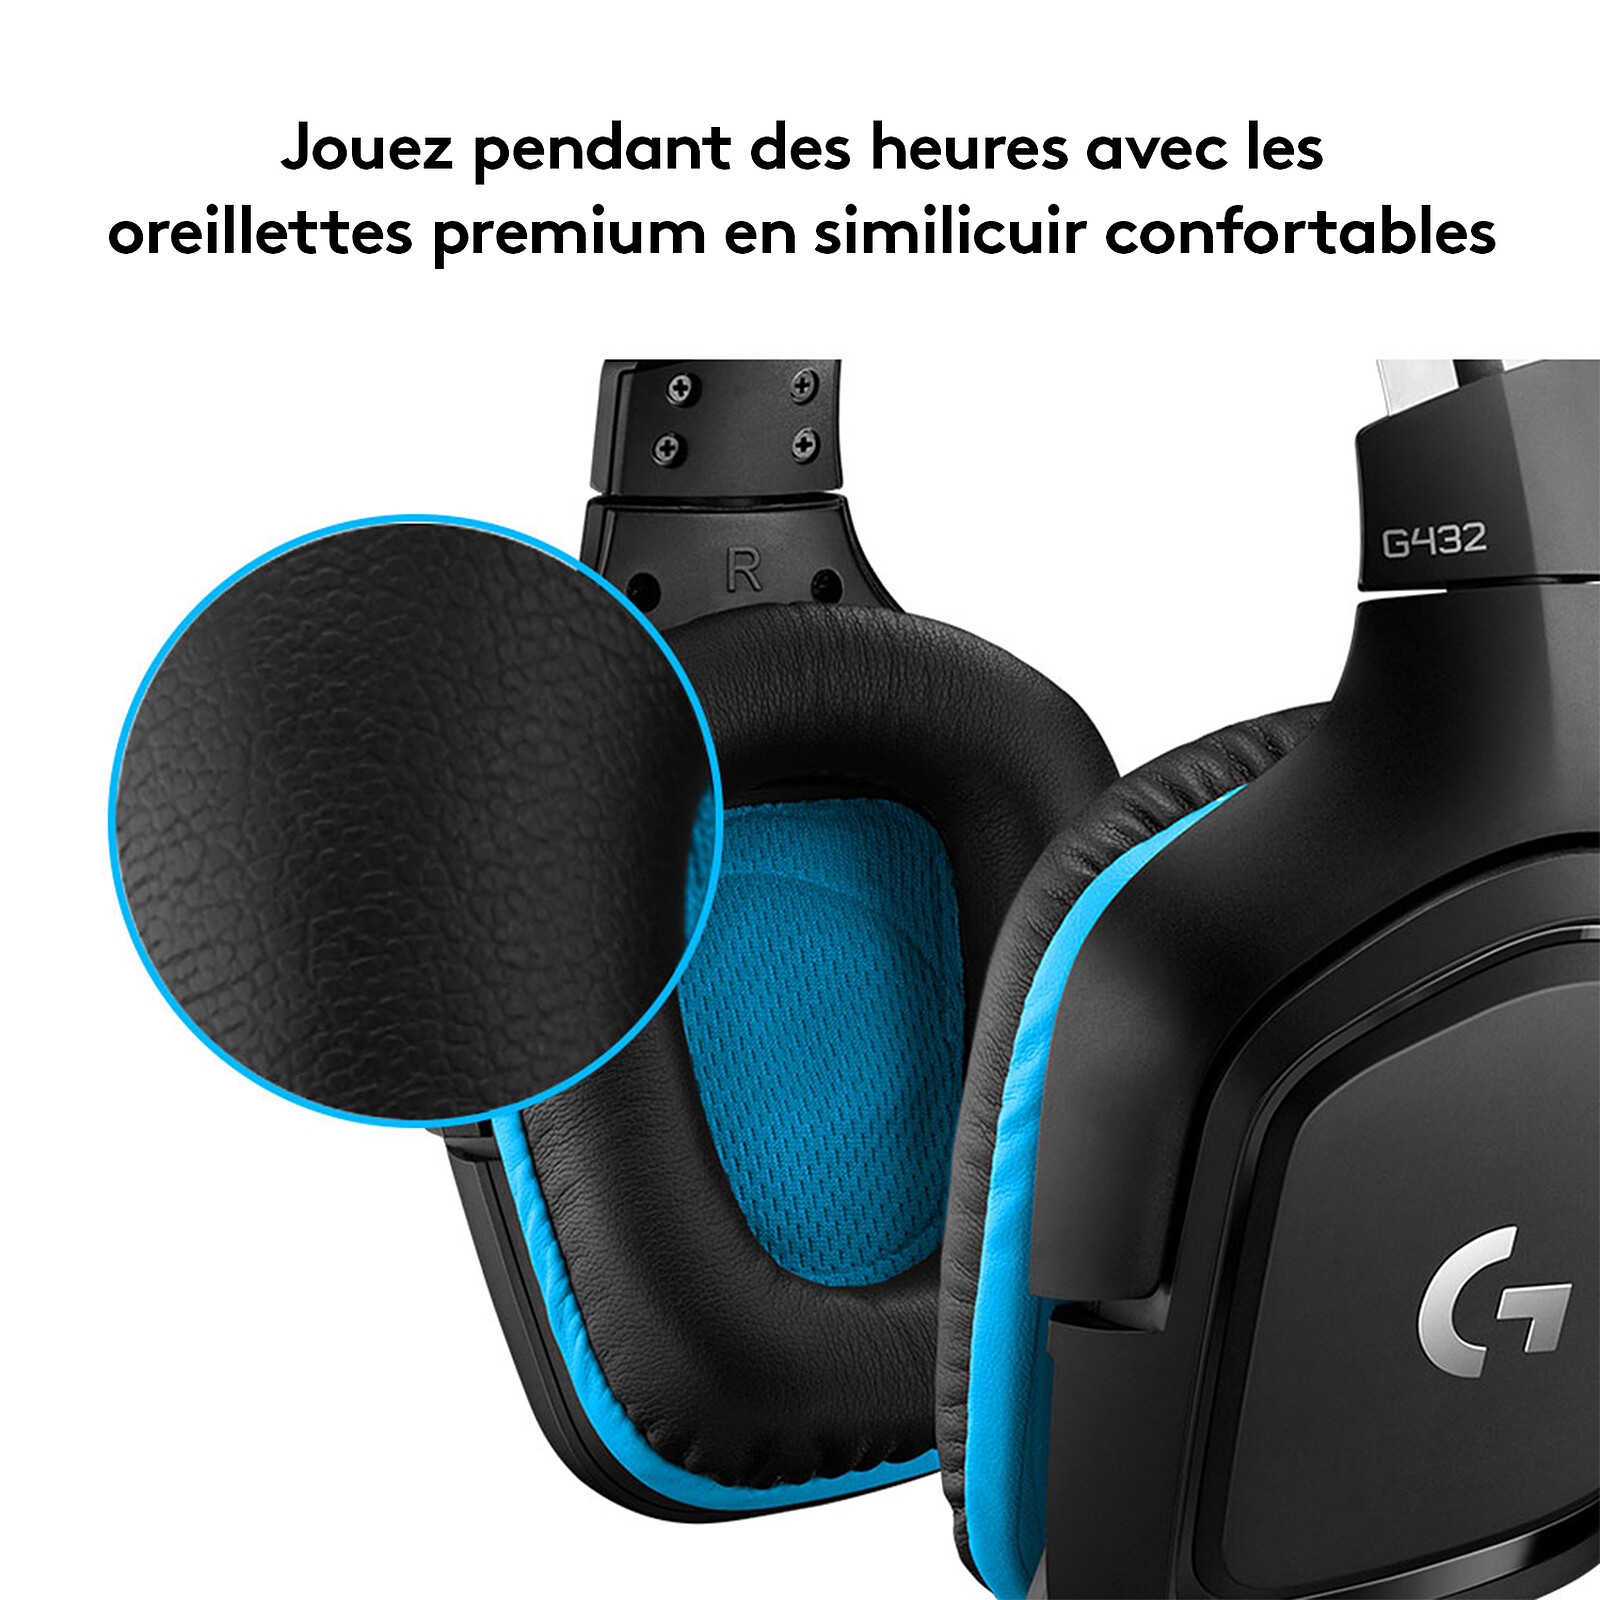 Logitech G G435 (Noir) - Micro-casque - Garantie 3 ans LDLC